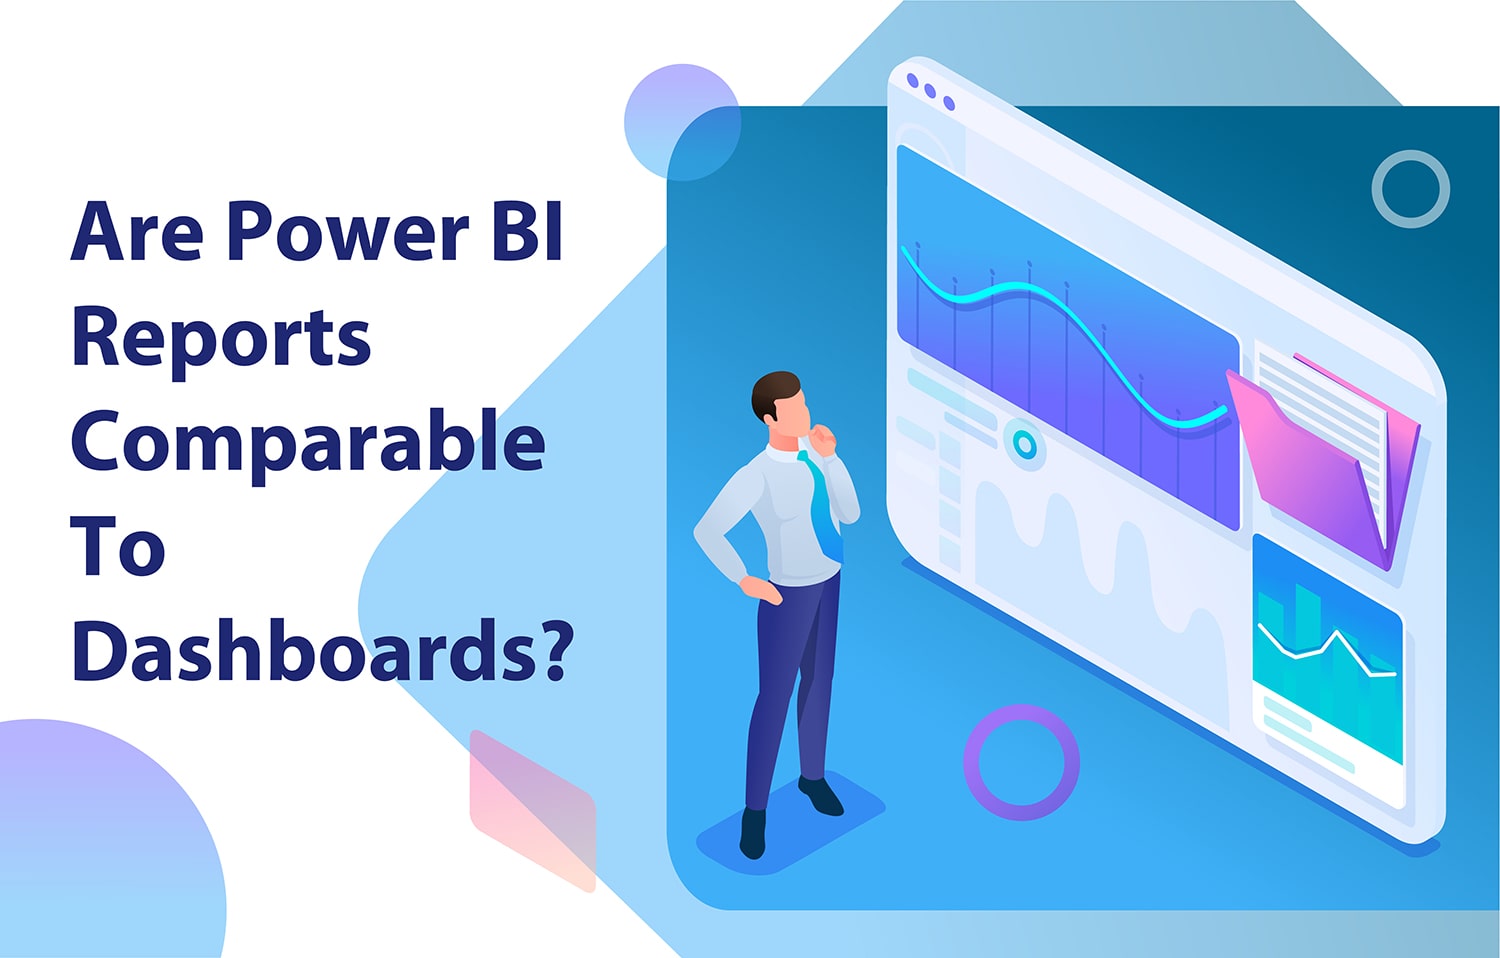 آیا Power BI Reports با Dashboards قابل مقایسه است؟